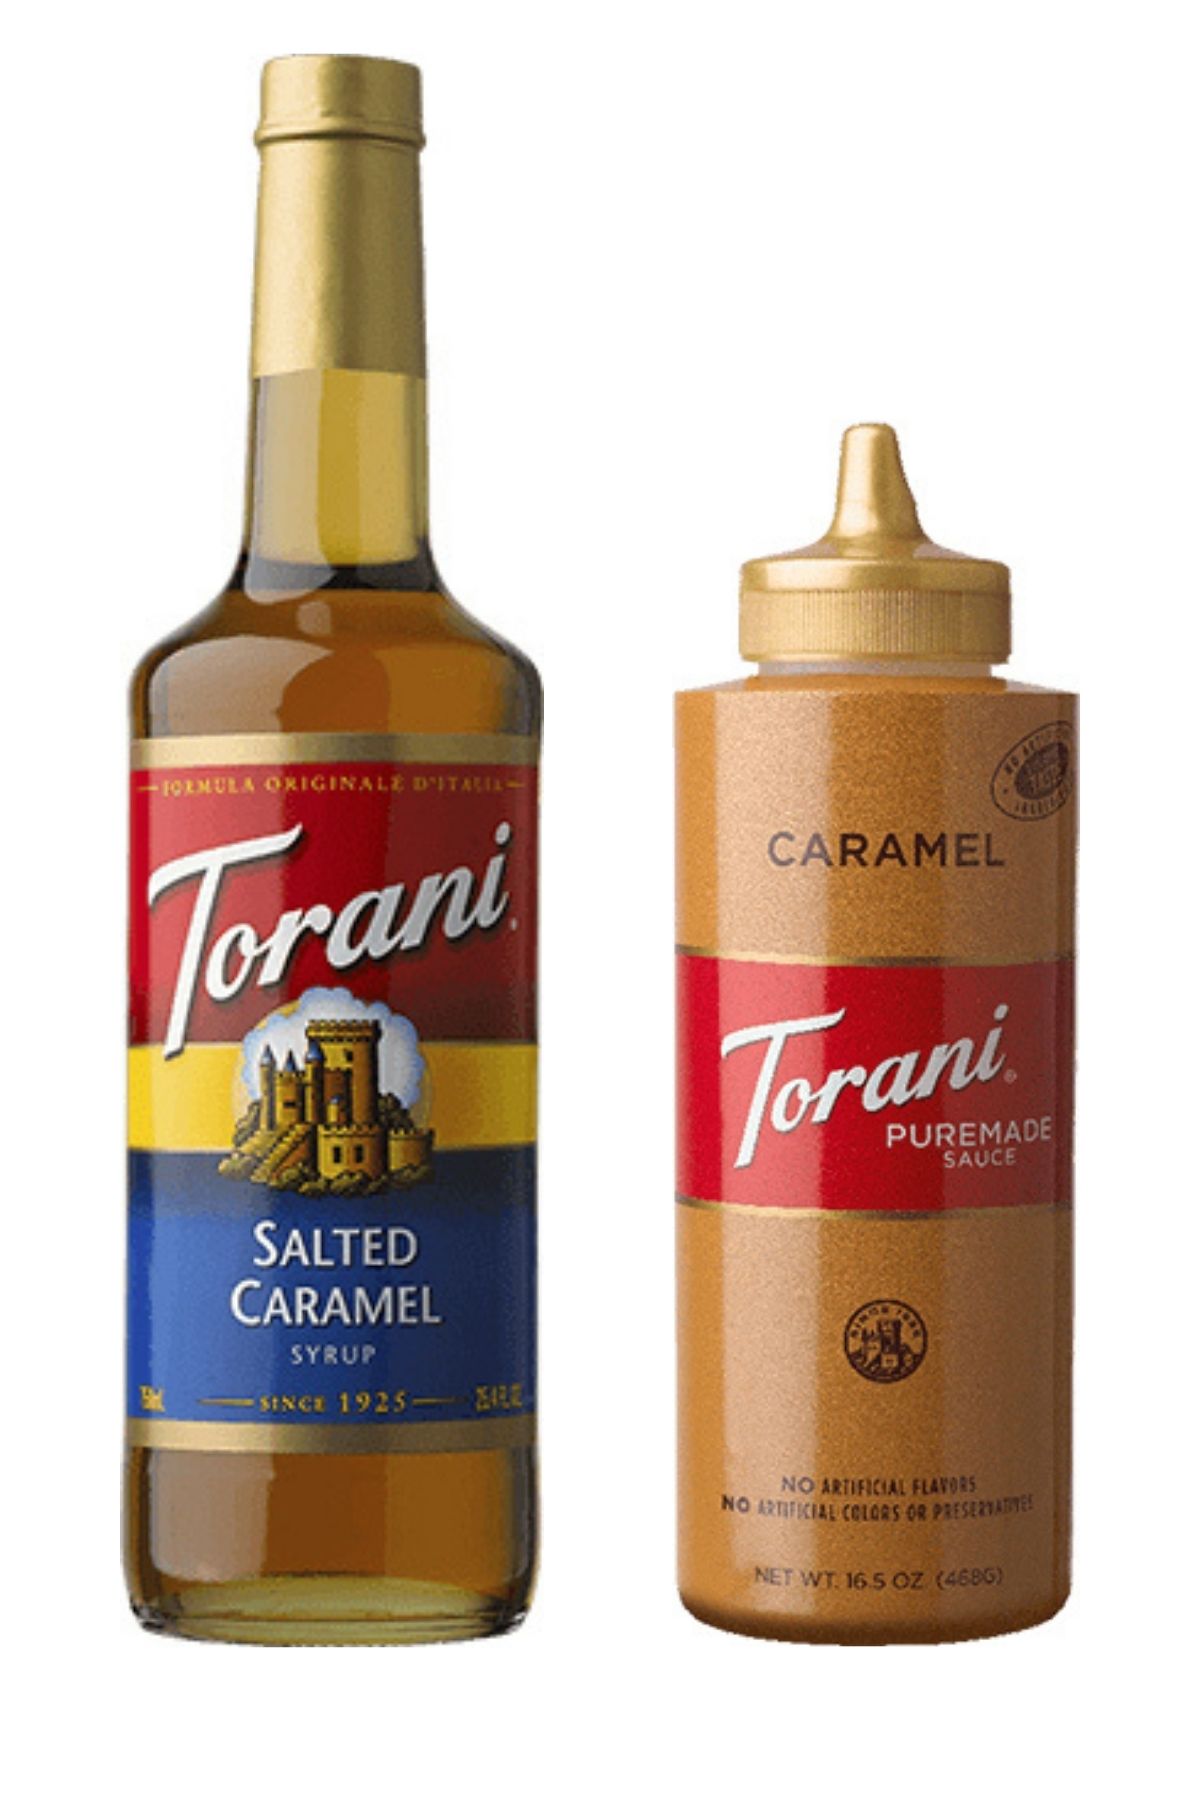 Bottle of Torani caramel syrup next to bottle of caramel sauce on white background.